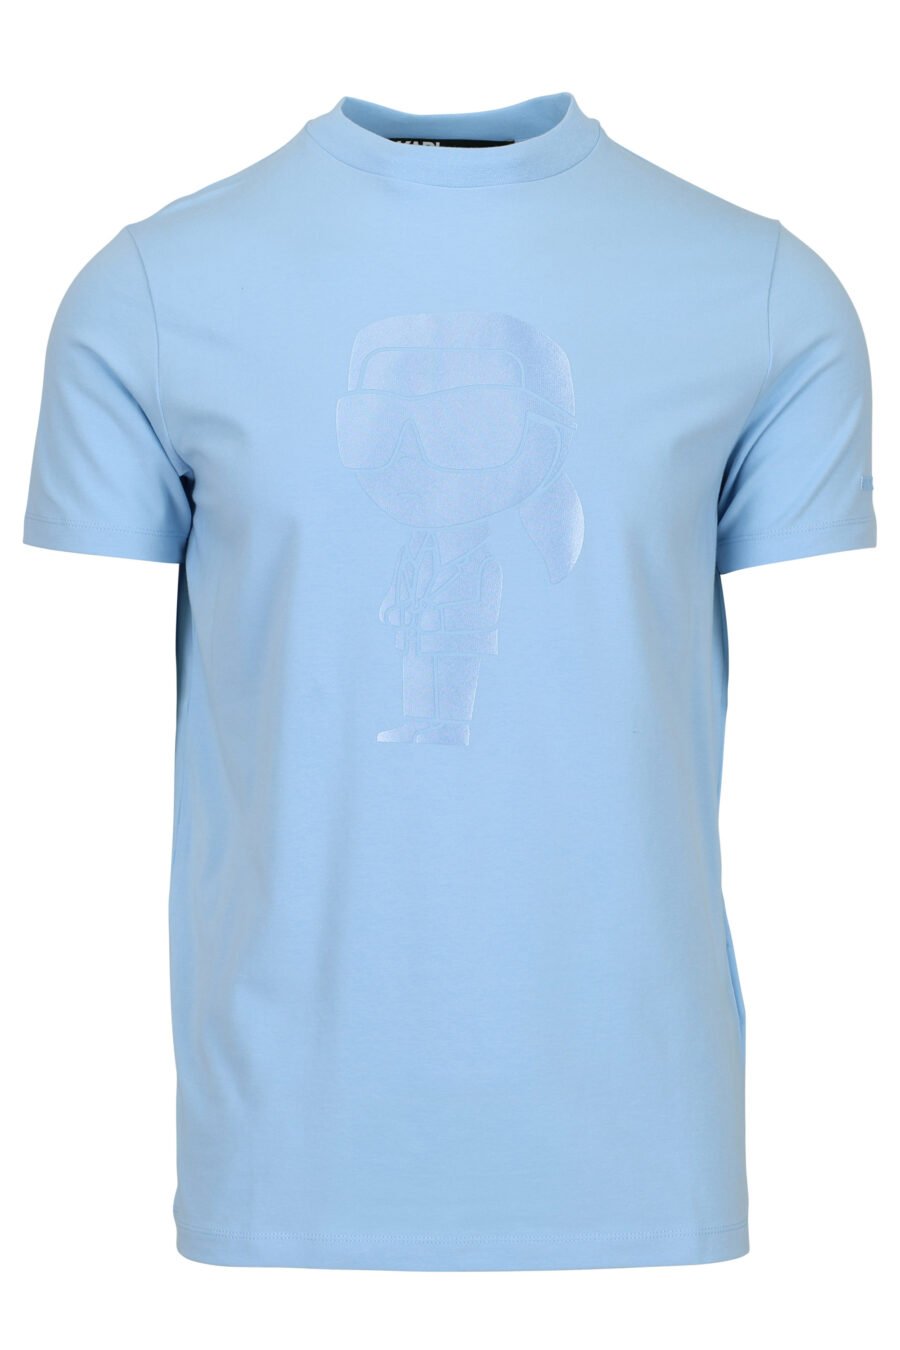 Camiseta azul claro con maxilogo "karl" monocromático - 4062226788632